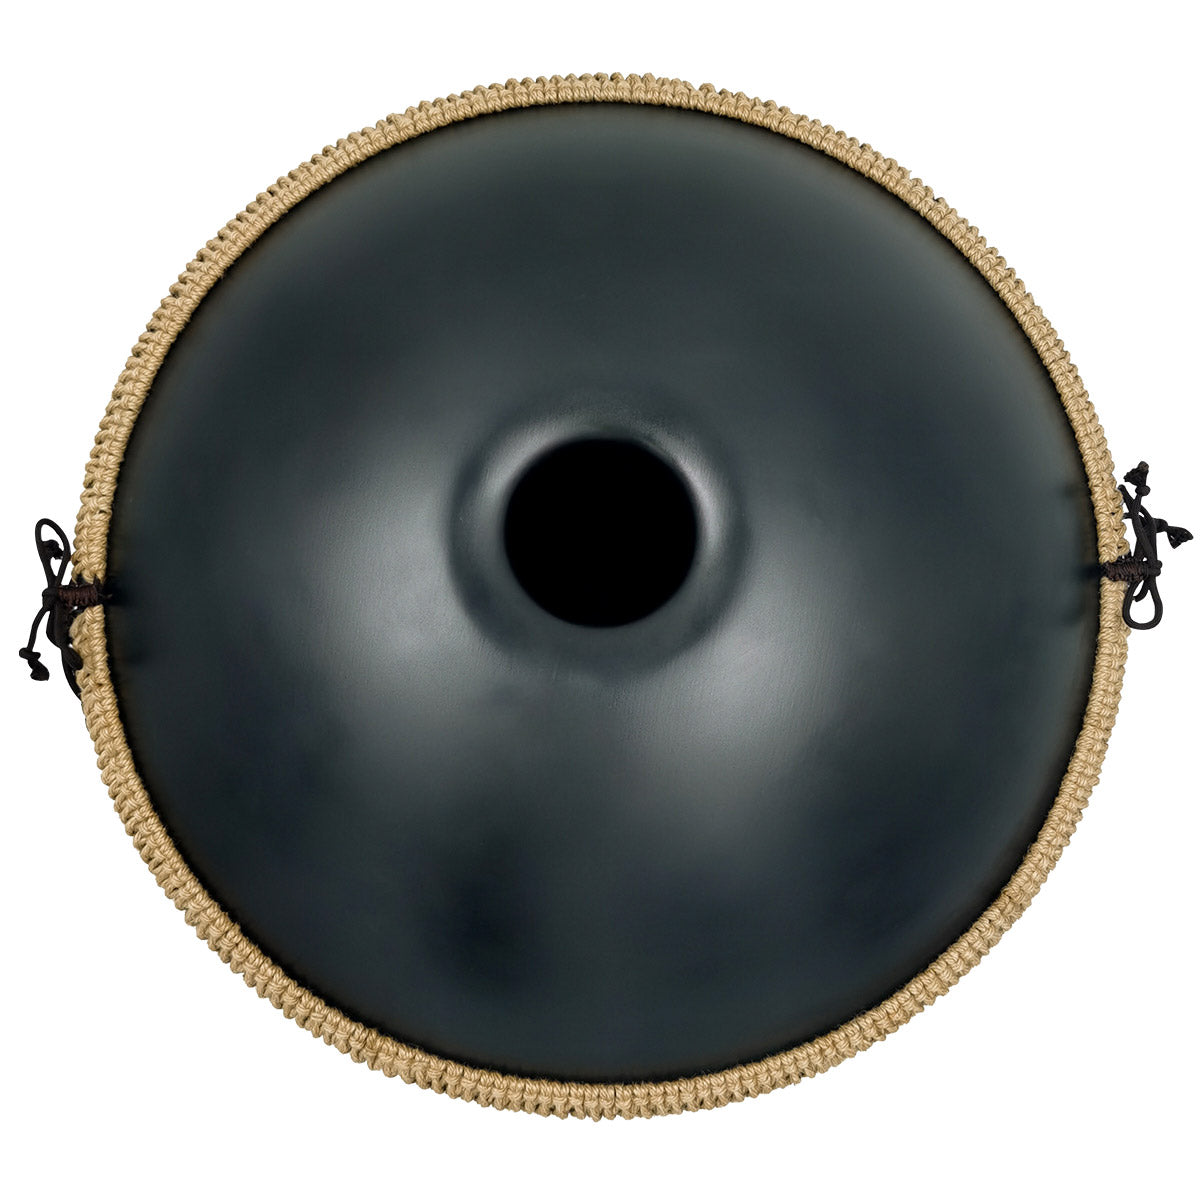 MiSoundofNature DC Handpan Drum Pure Black 22 Inches 9 Notes D Minor Kurd Scale Hangdrum